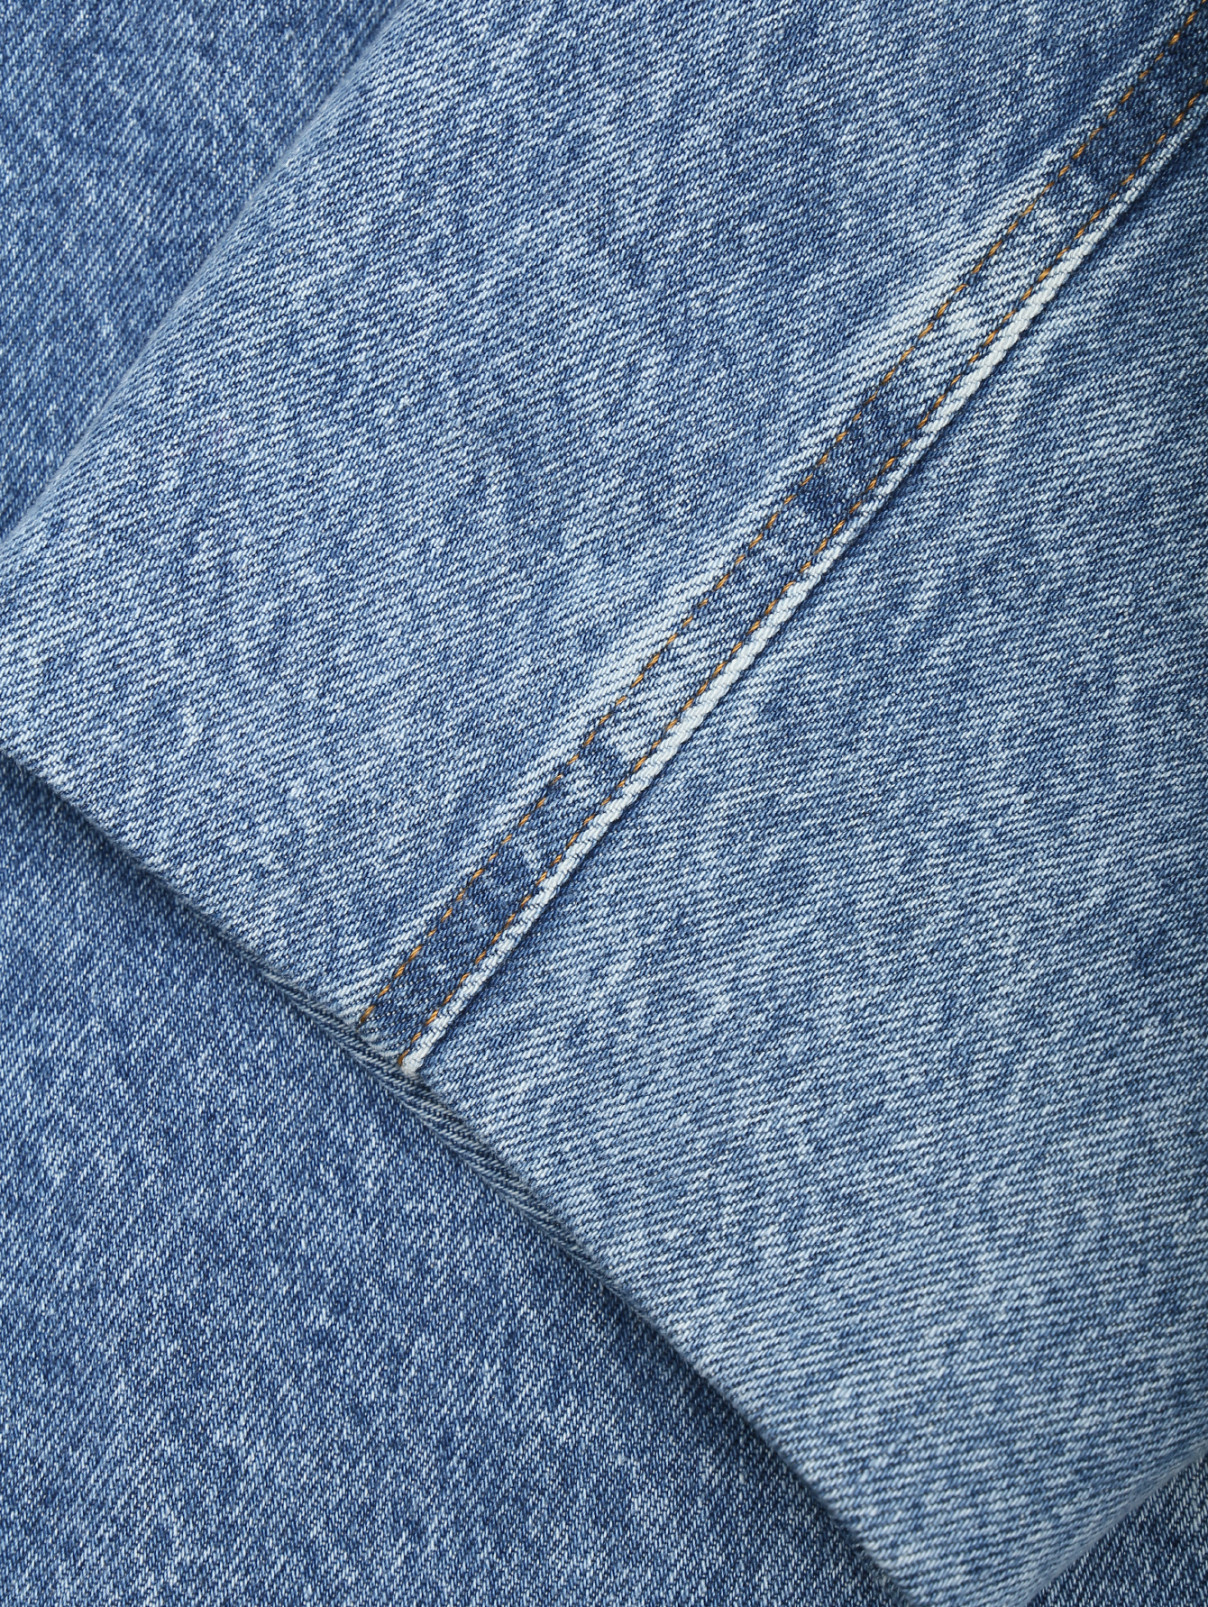 Джинсовое пальто из хлопка на контрастной подкладе Balenciaga  –  Деталь1  – Цвет:  Синий